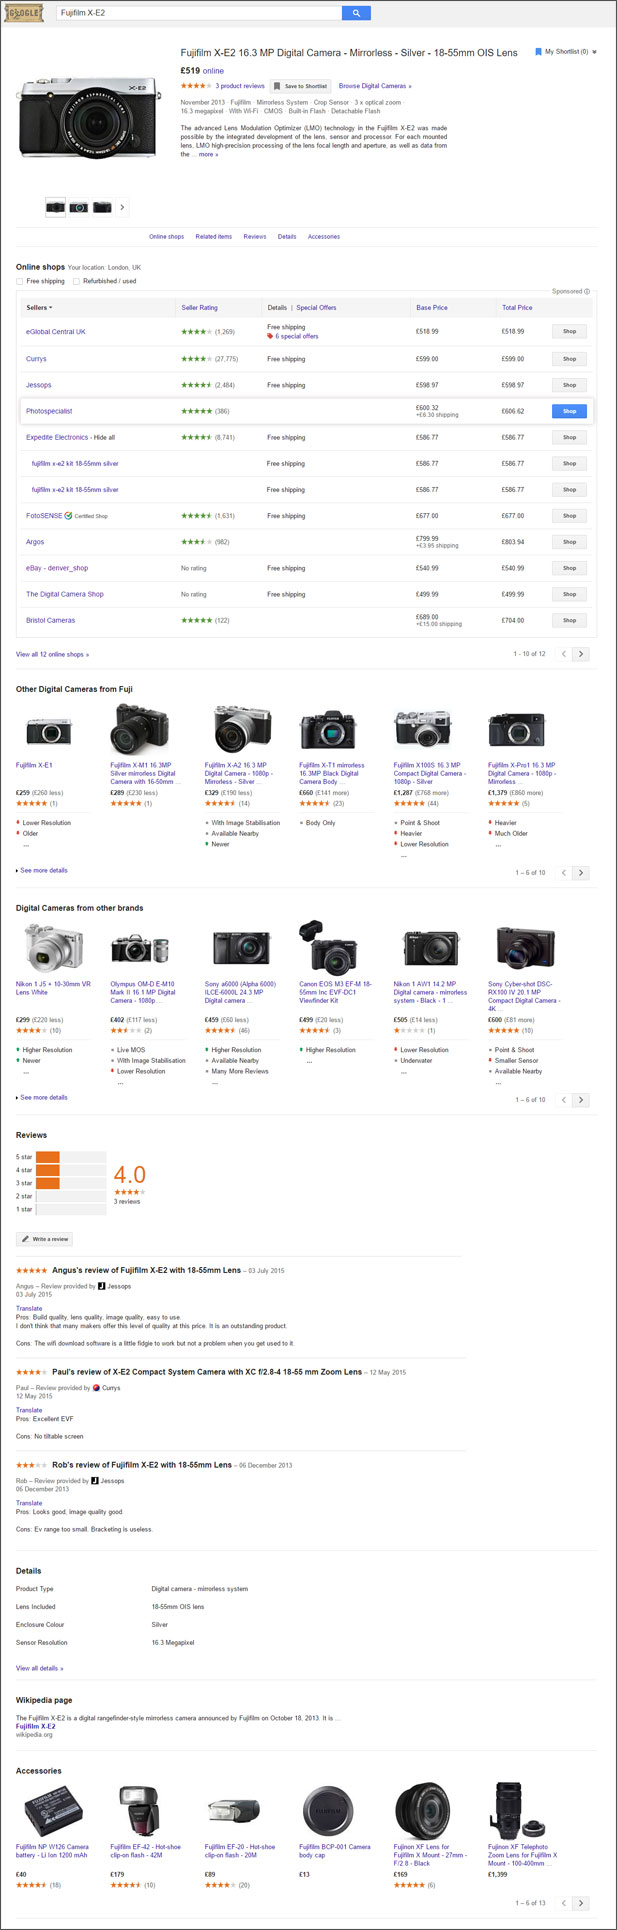 Fujifilm listing